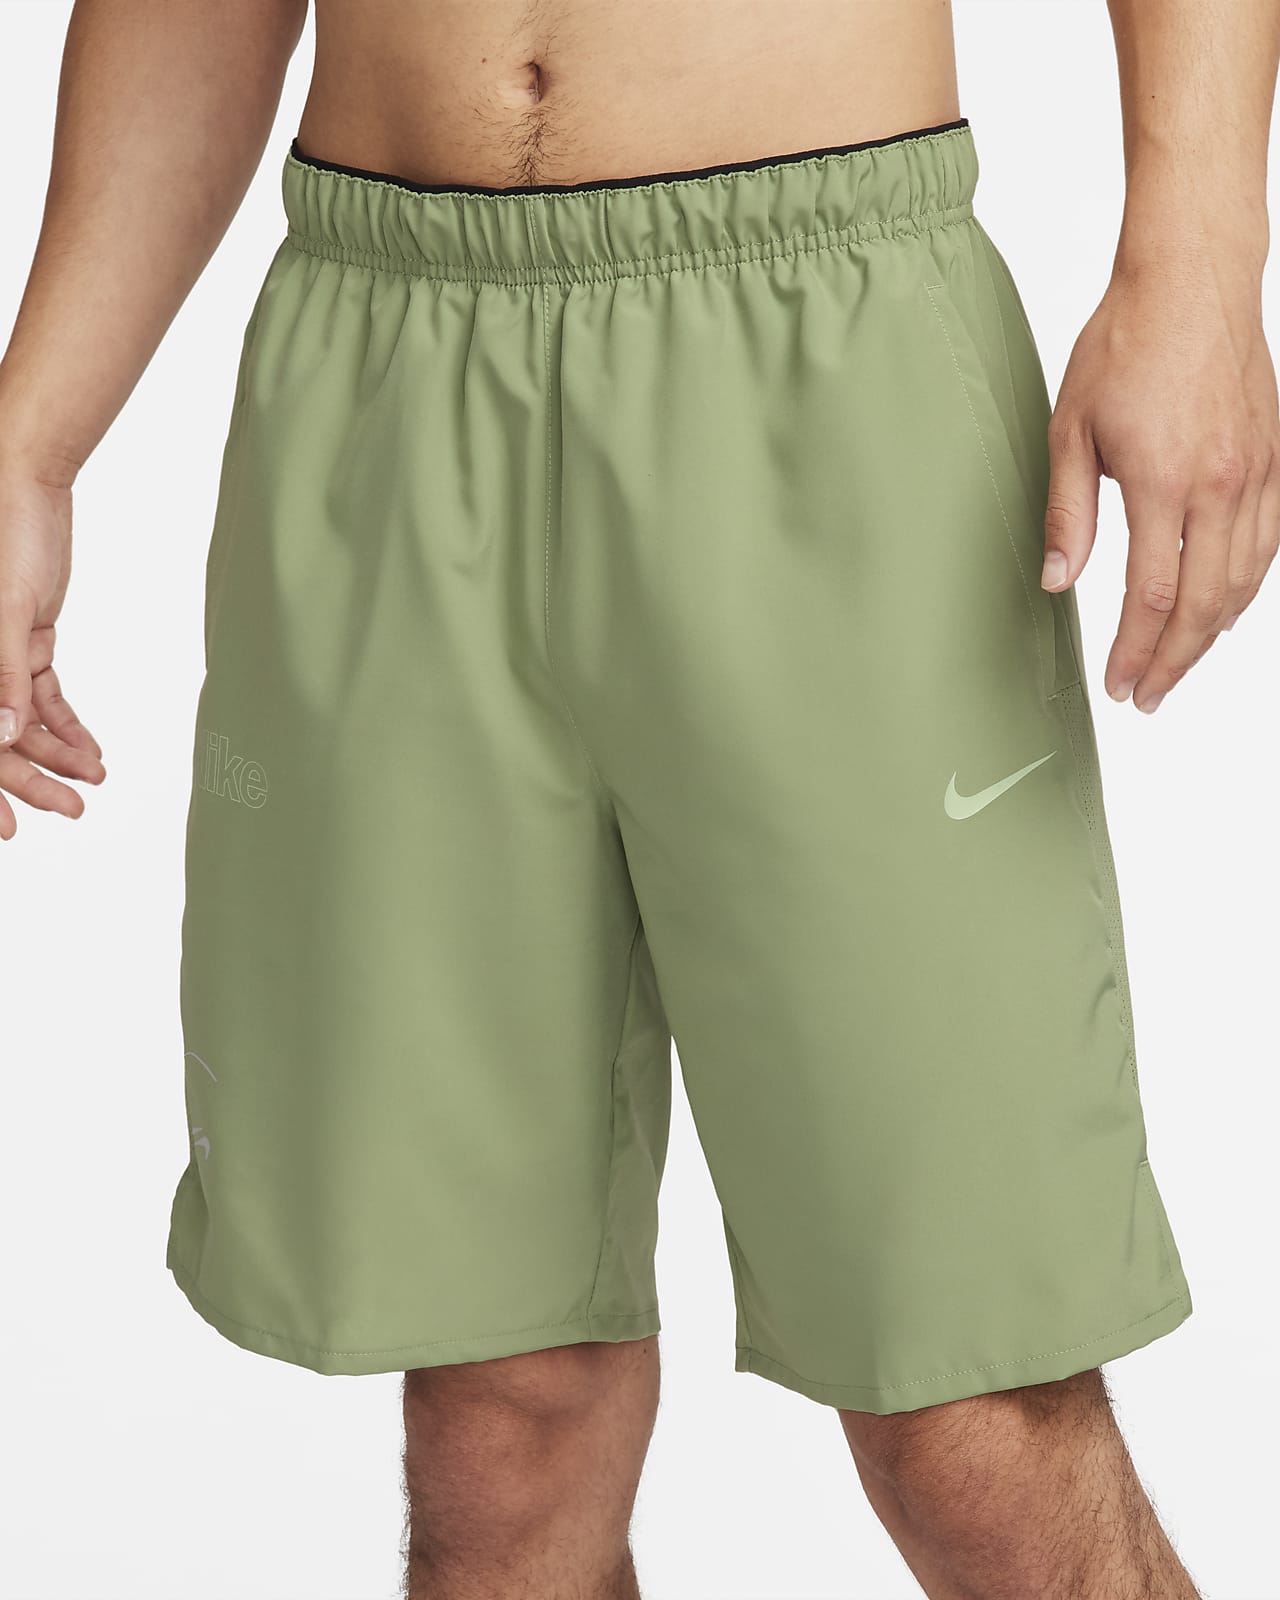 Nike Kobe ショートパンツ XL